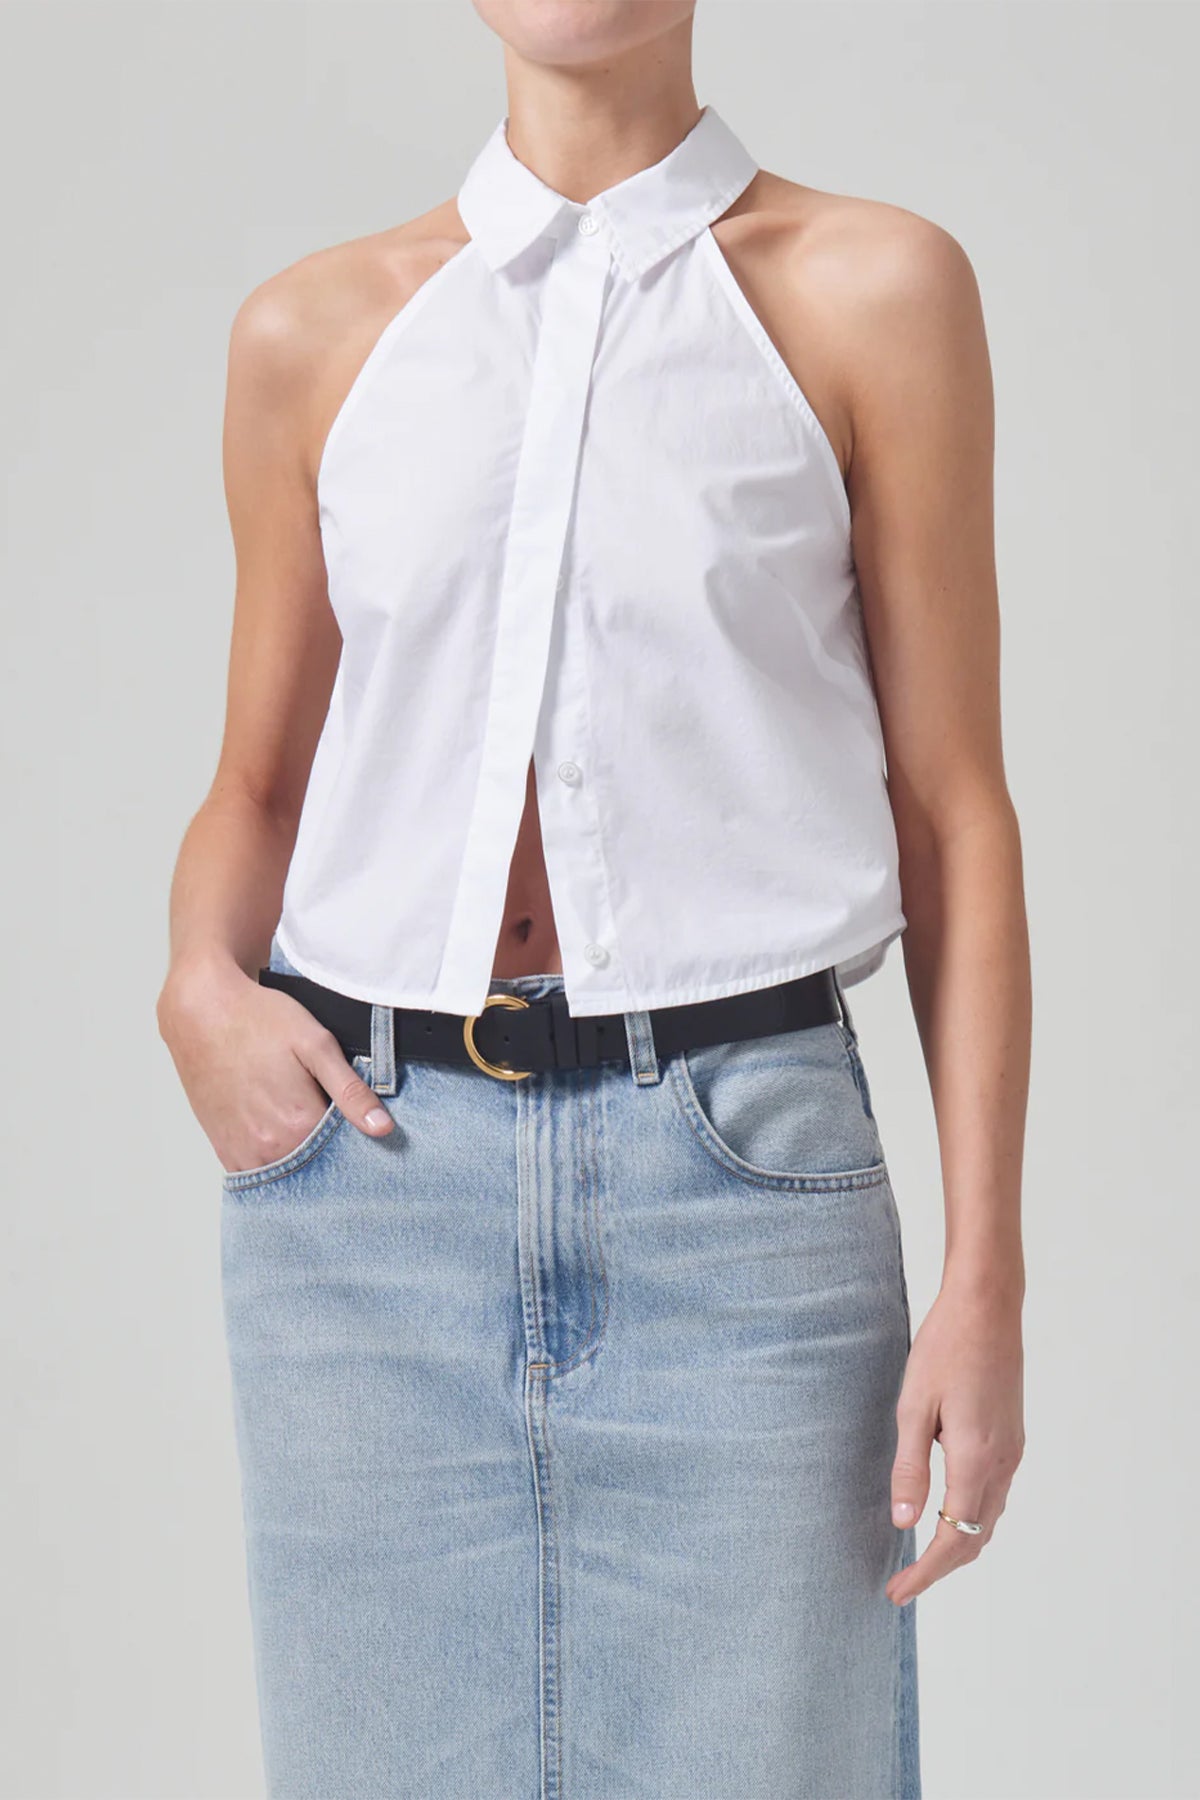 Adeline Sleeveless Shirt in Optic White - shop-olivia.com